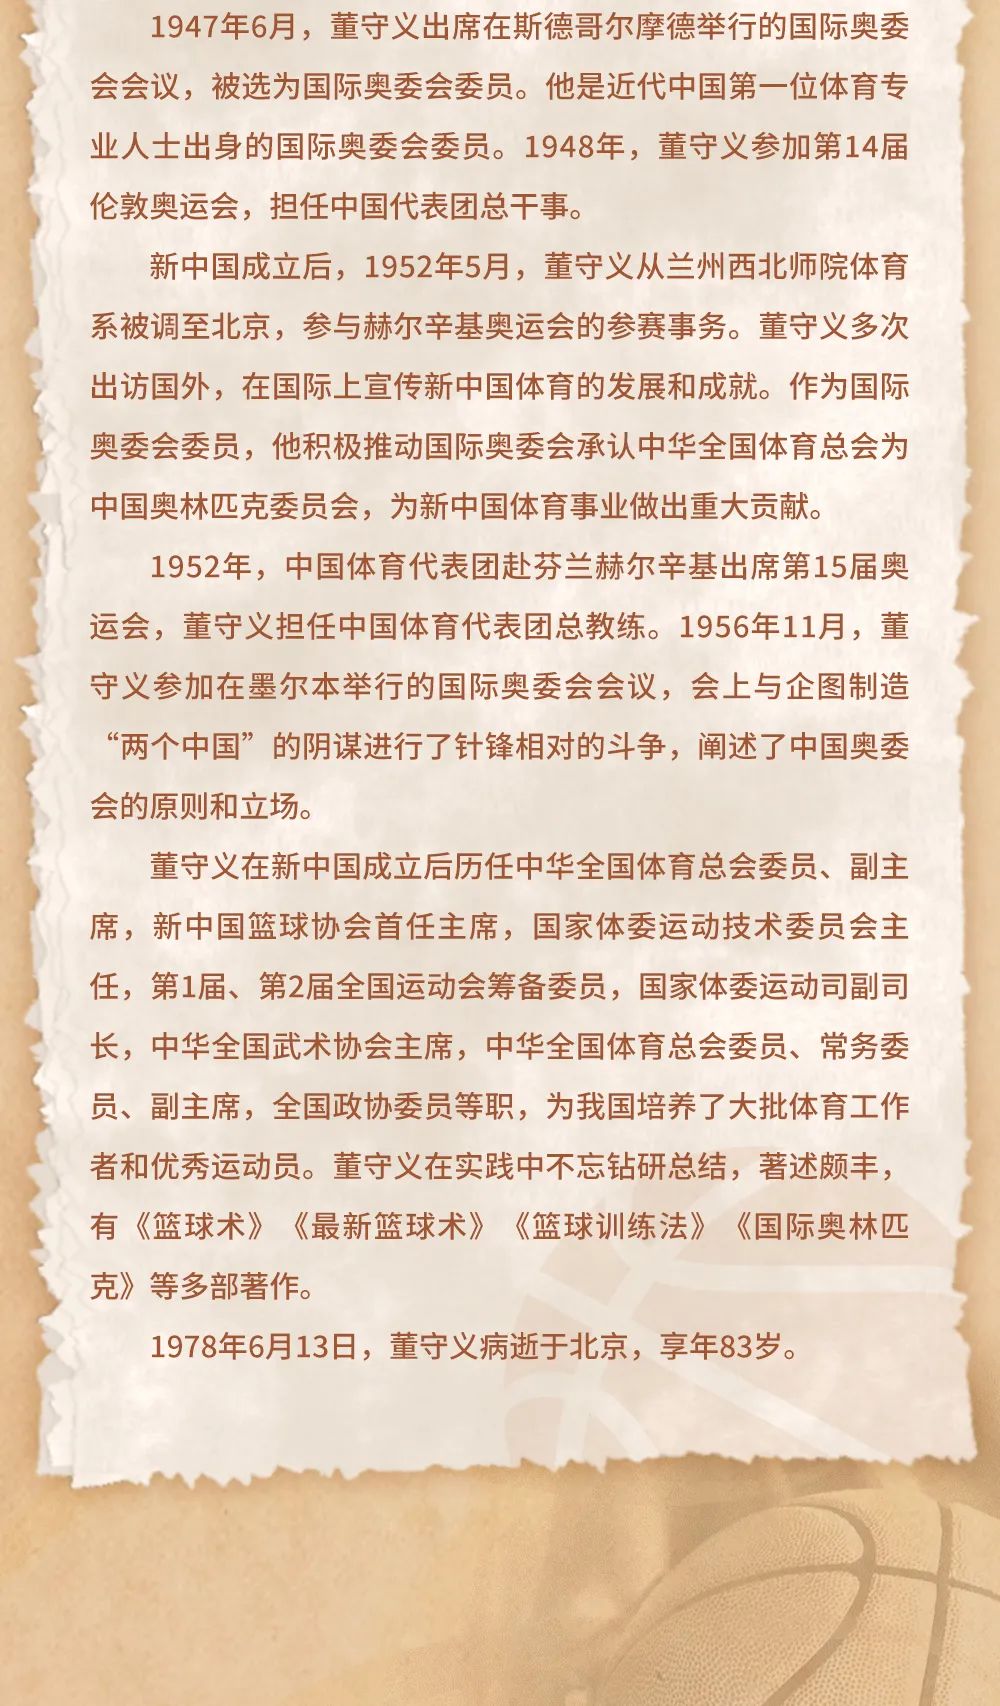 中国名人堂 | 特别致敬人物之董守义 “中国篮球之父”的传奇之路